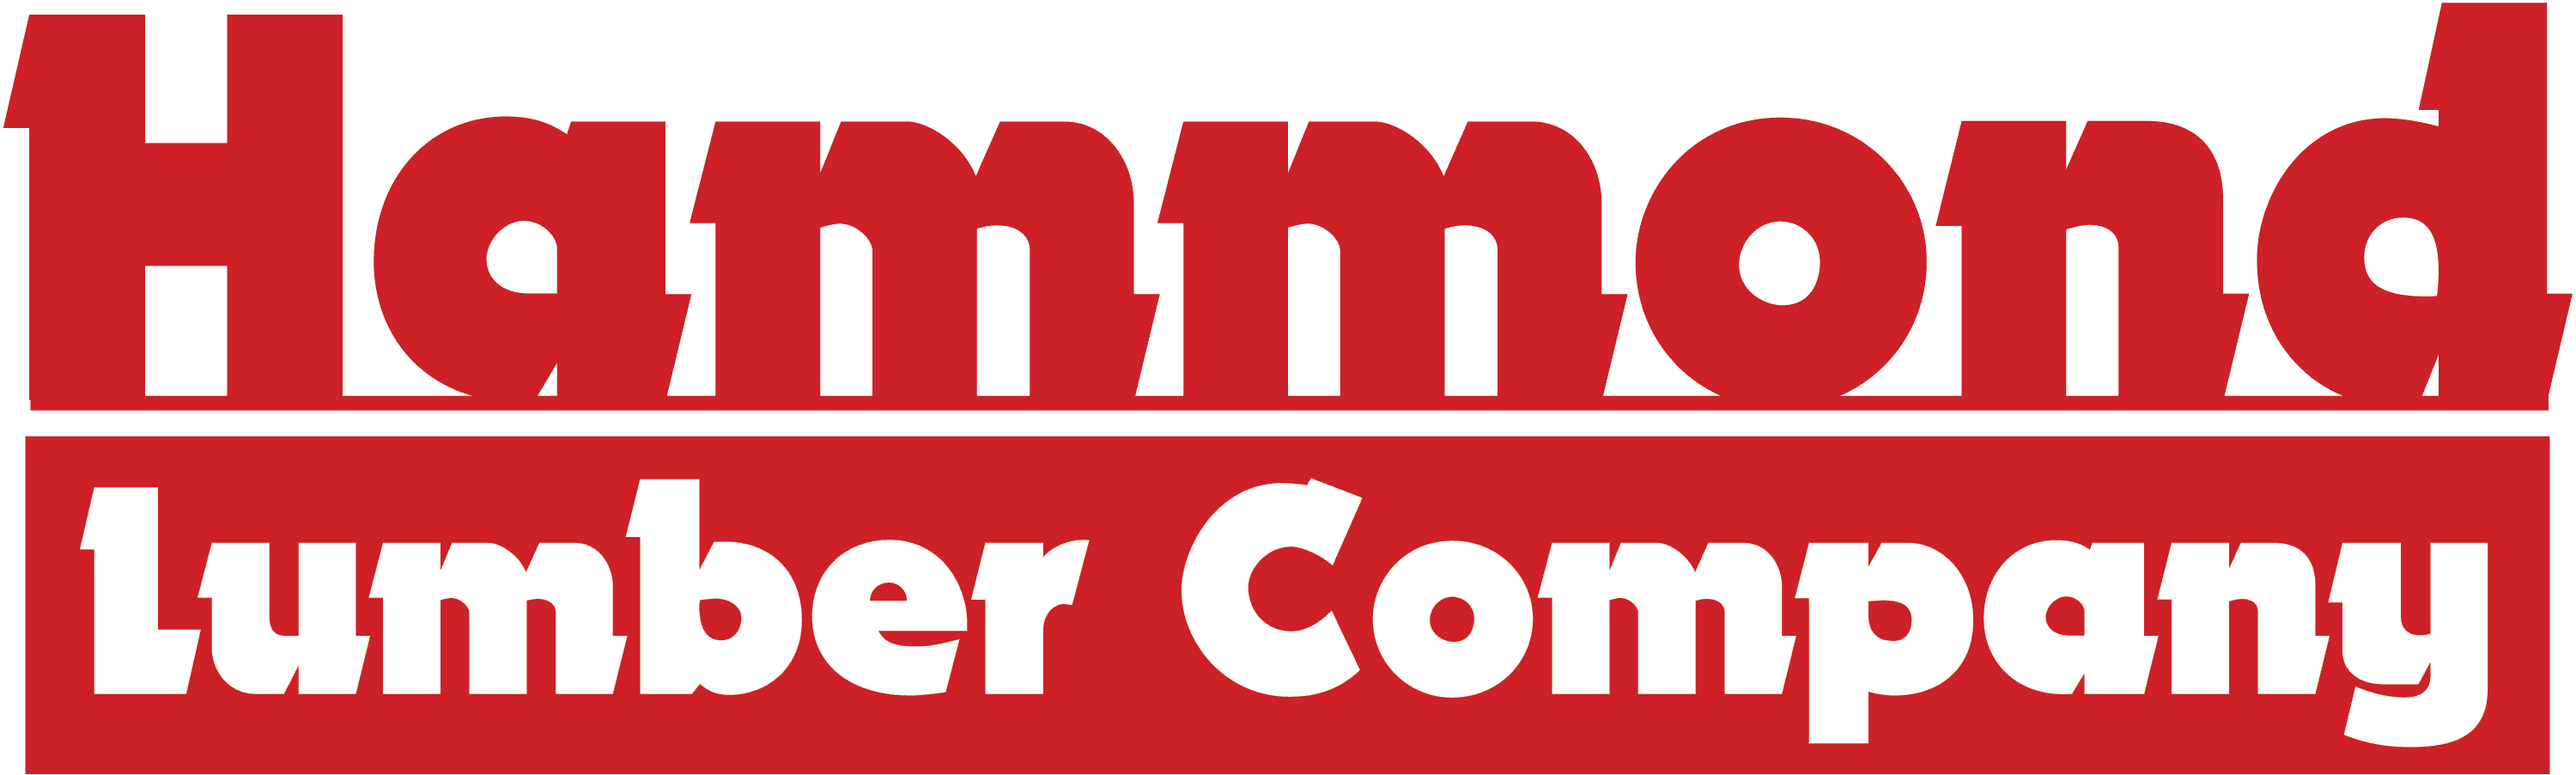 Hammond Lumber Company Official Logos | Hammond Lumber Company